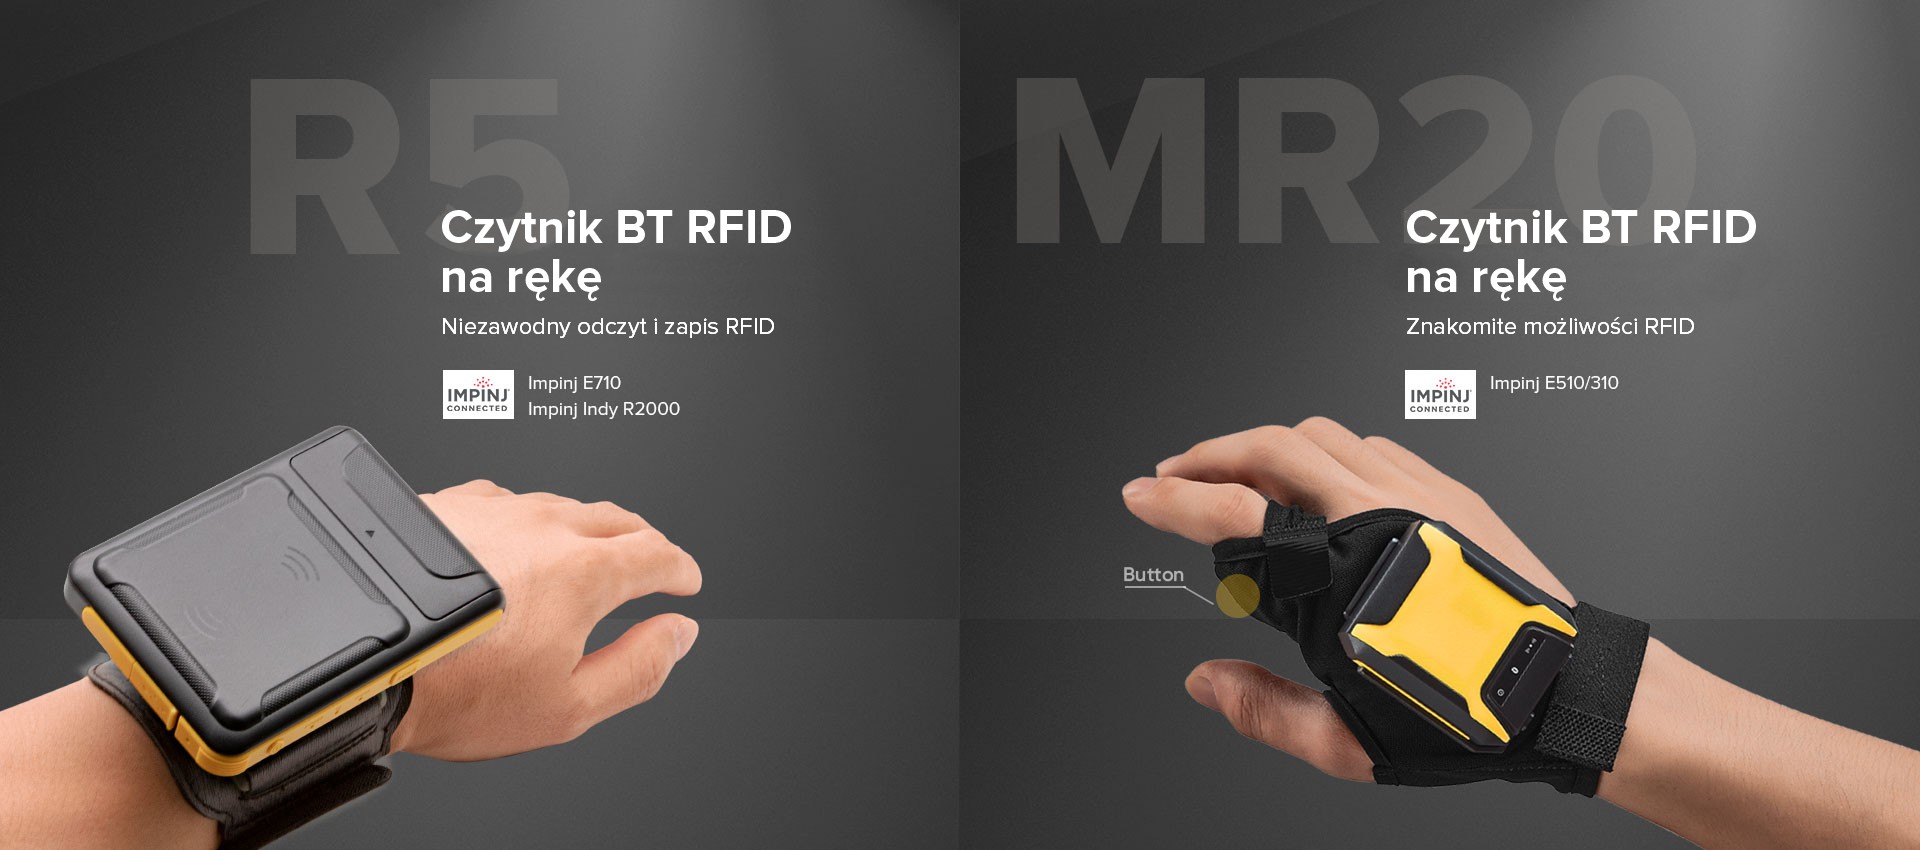 Chainway MR20 i R5 Czytniki RFID na rękę - Pewność odczytu i zapisu RFID UHF